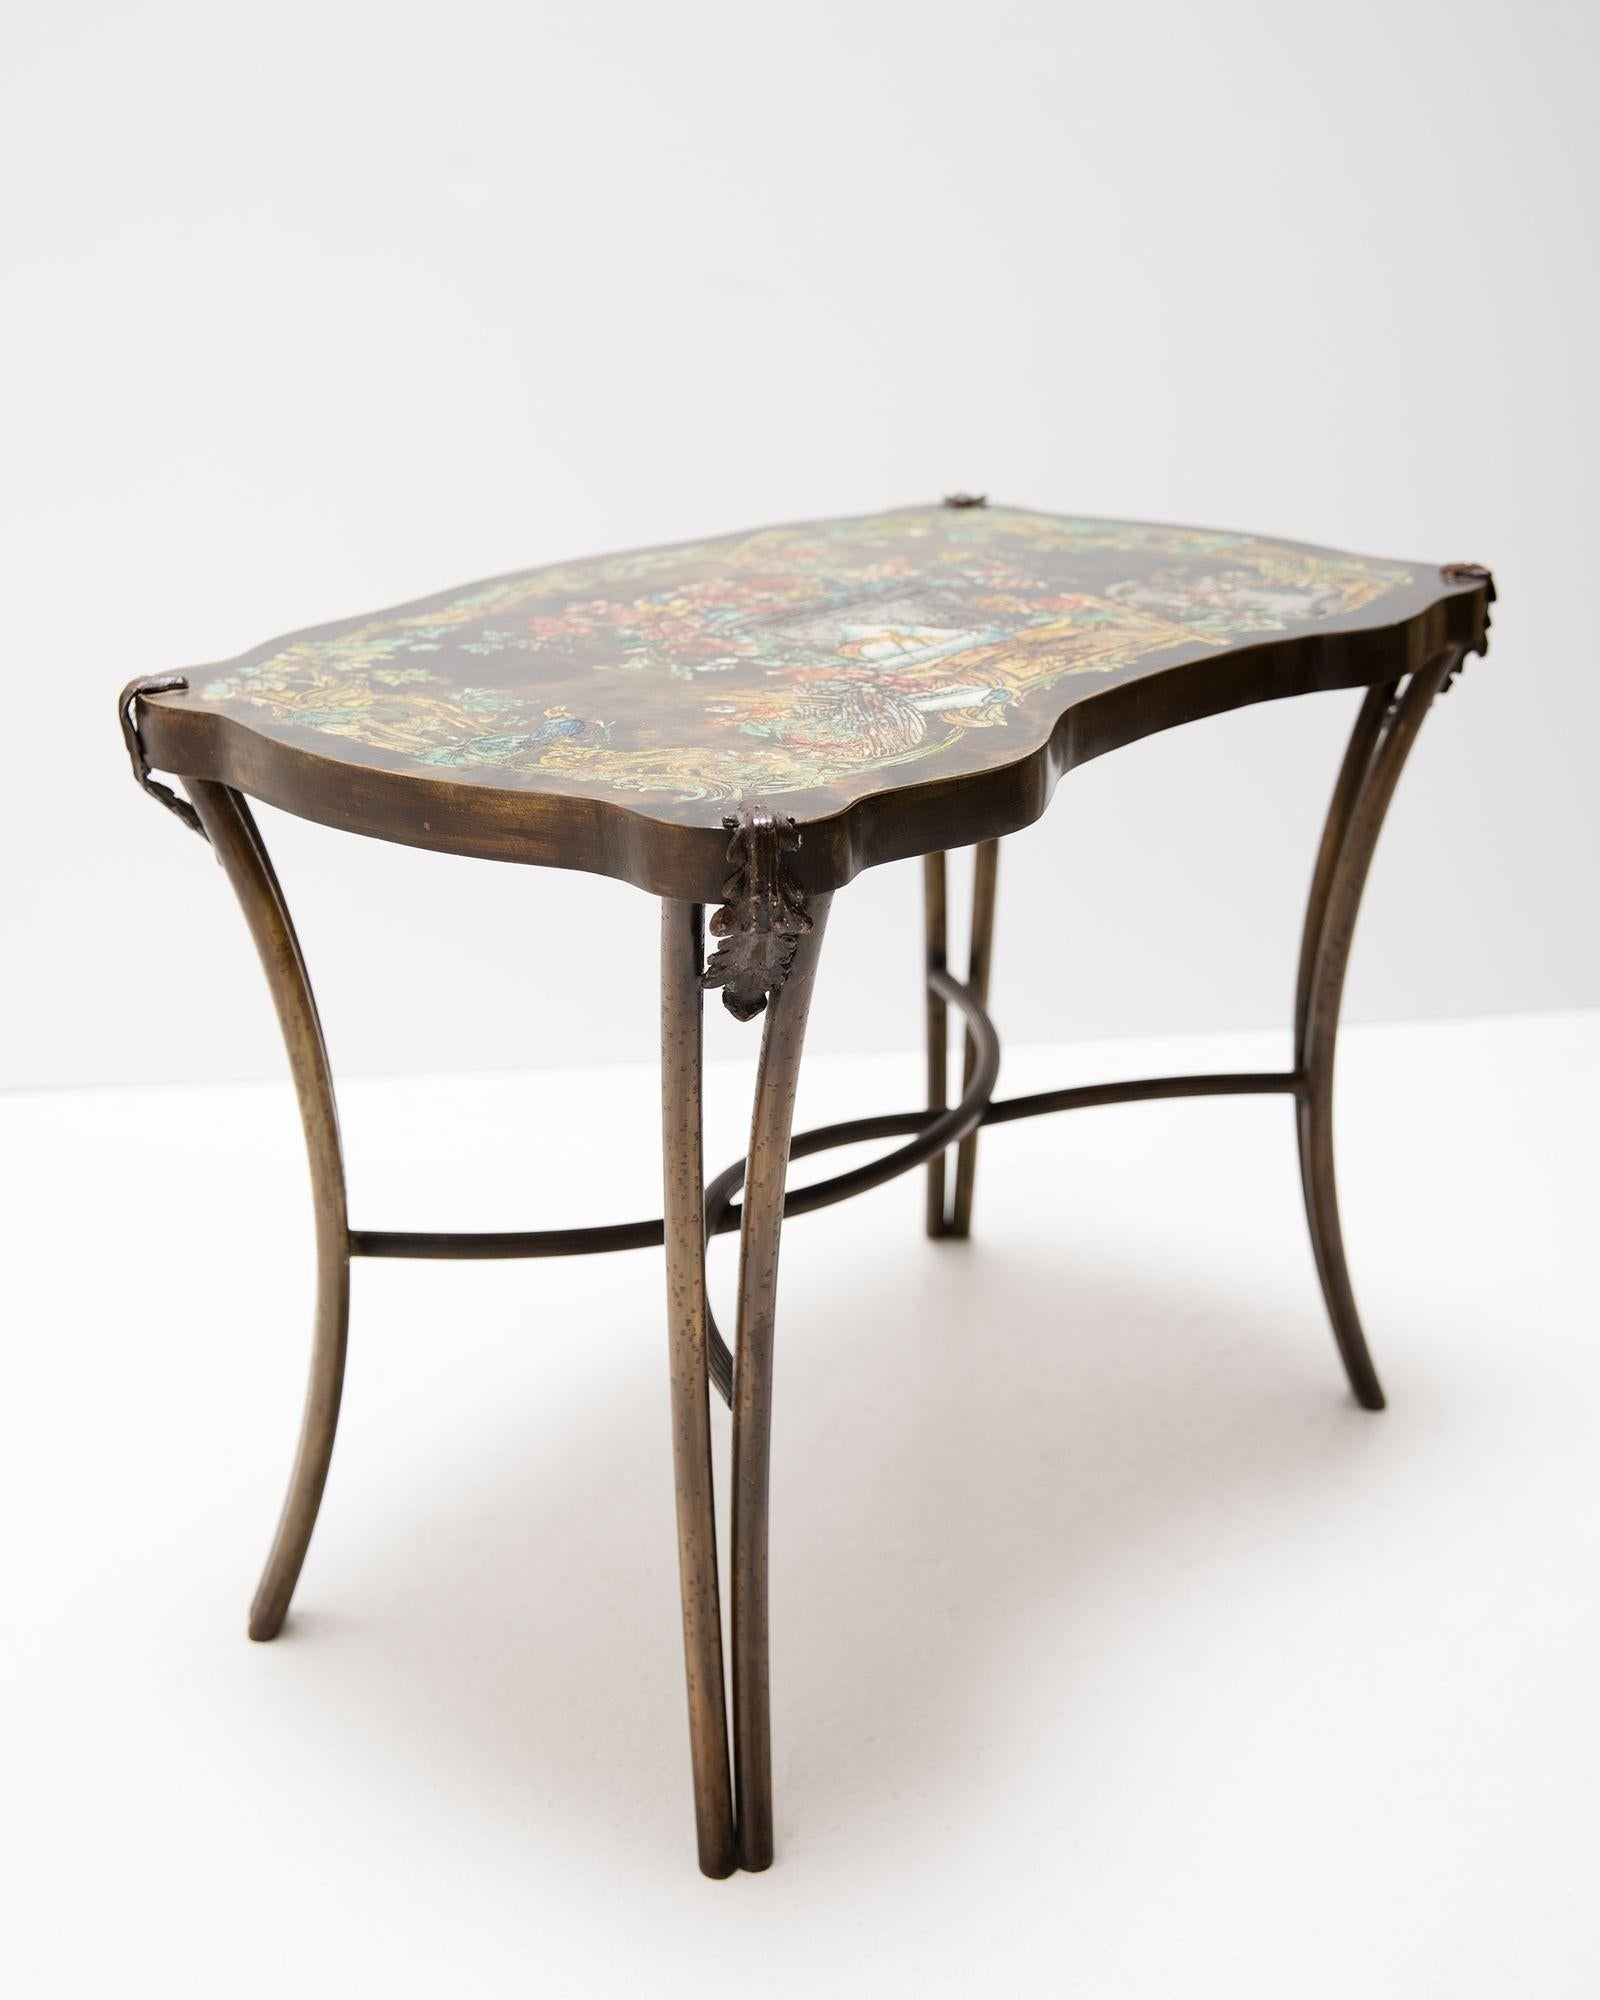 Rare table d'appoint 'Madame Pompadour' de Philip et Kelvin LaVerne, inspirée de la table originale de la Marquise de Pompadour, réalisée en cloisonné sur bronze. Ce bronze gravé à l'acide présente une patine appliquée et des ornements peints à la